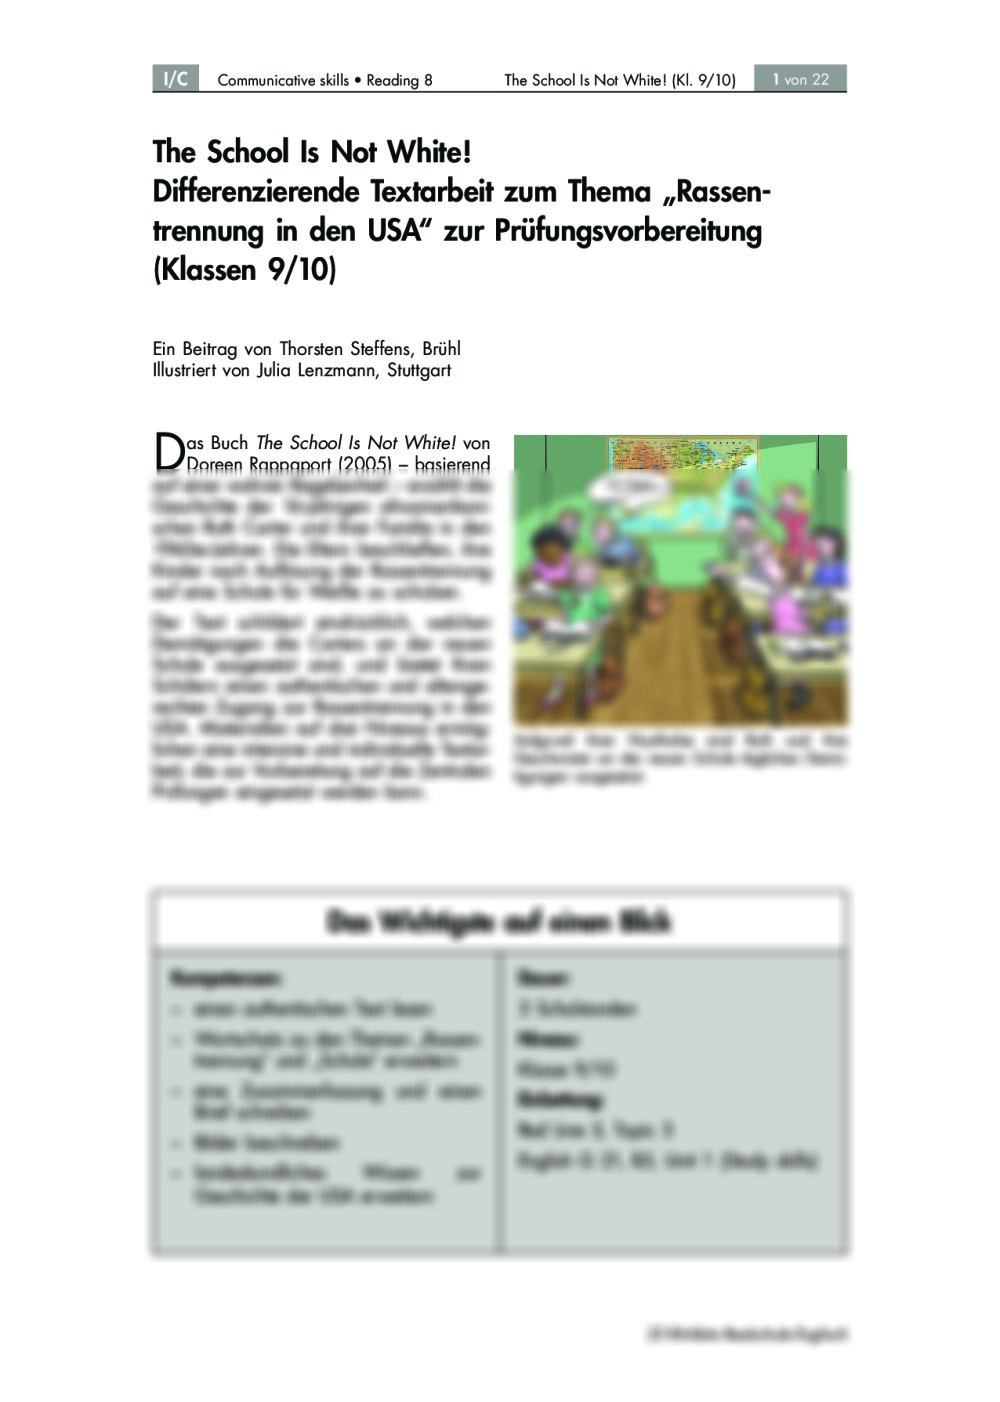 Differenzierende Textarbeit zum Thema “Rassentrennung in den USA” zur Prüfungsvorbereitung - Seite 1